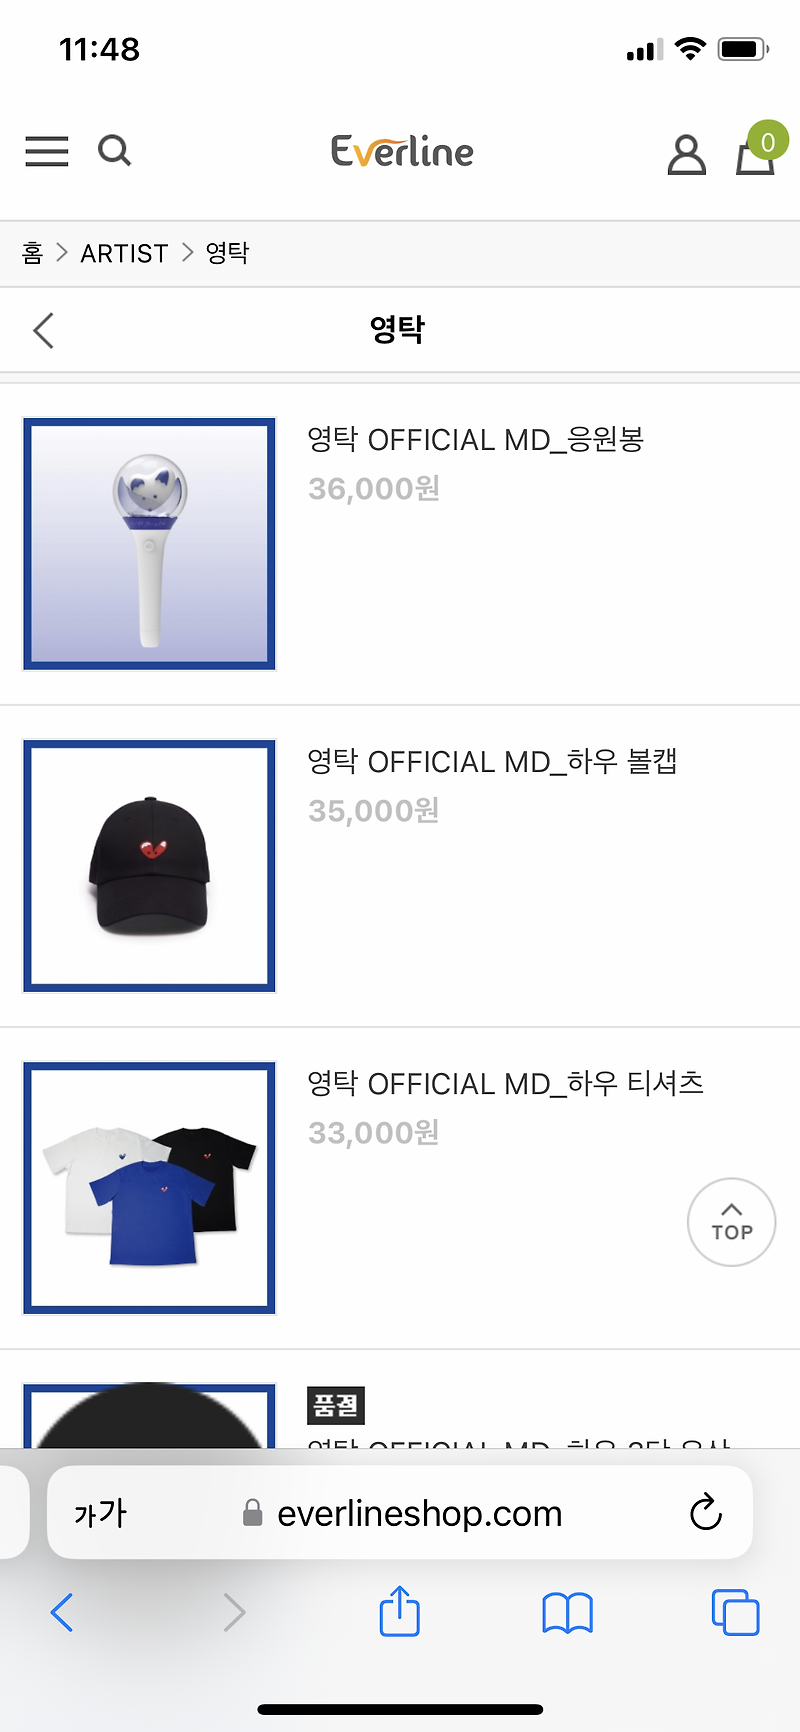 영탁 콘서트 공식 응원봉 하우봉 티셔츠 굿즈 구매처